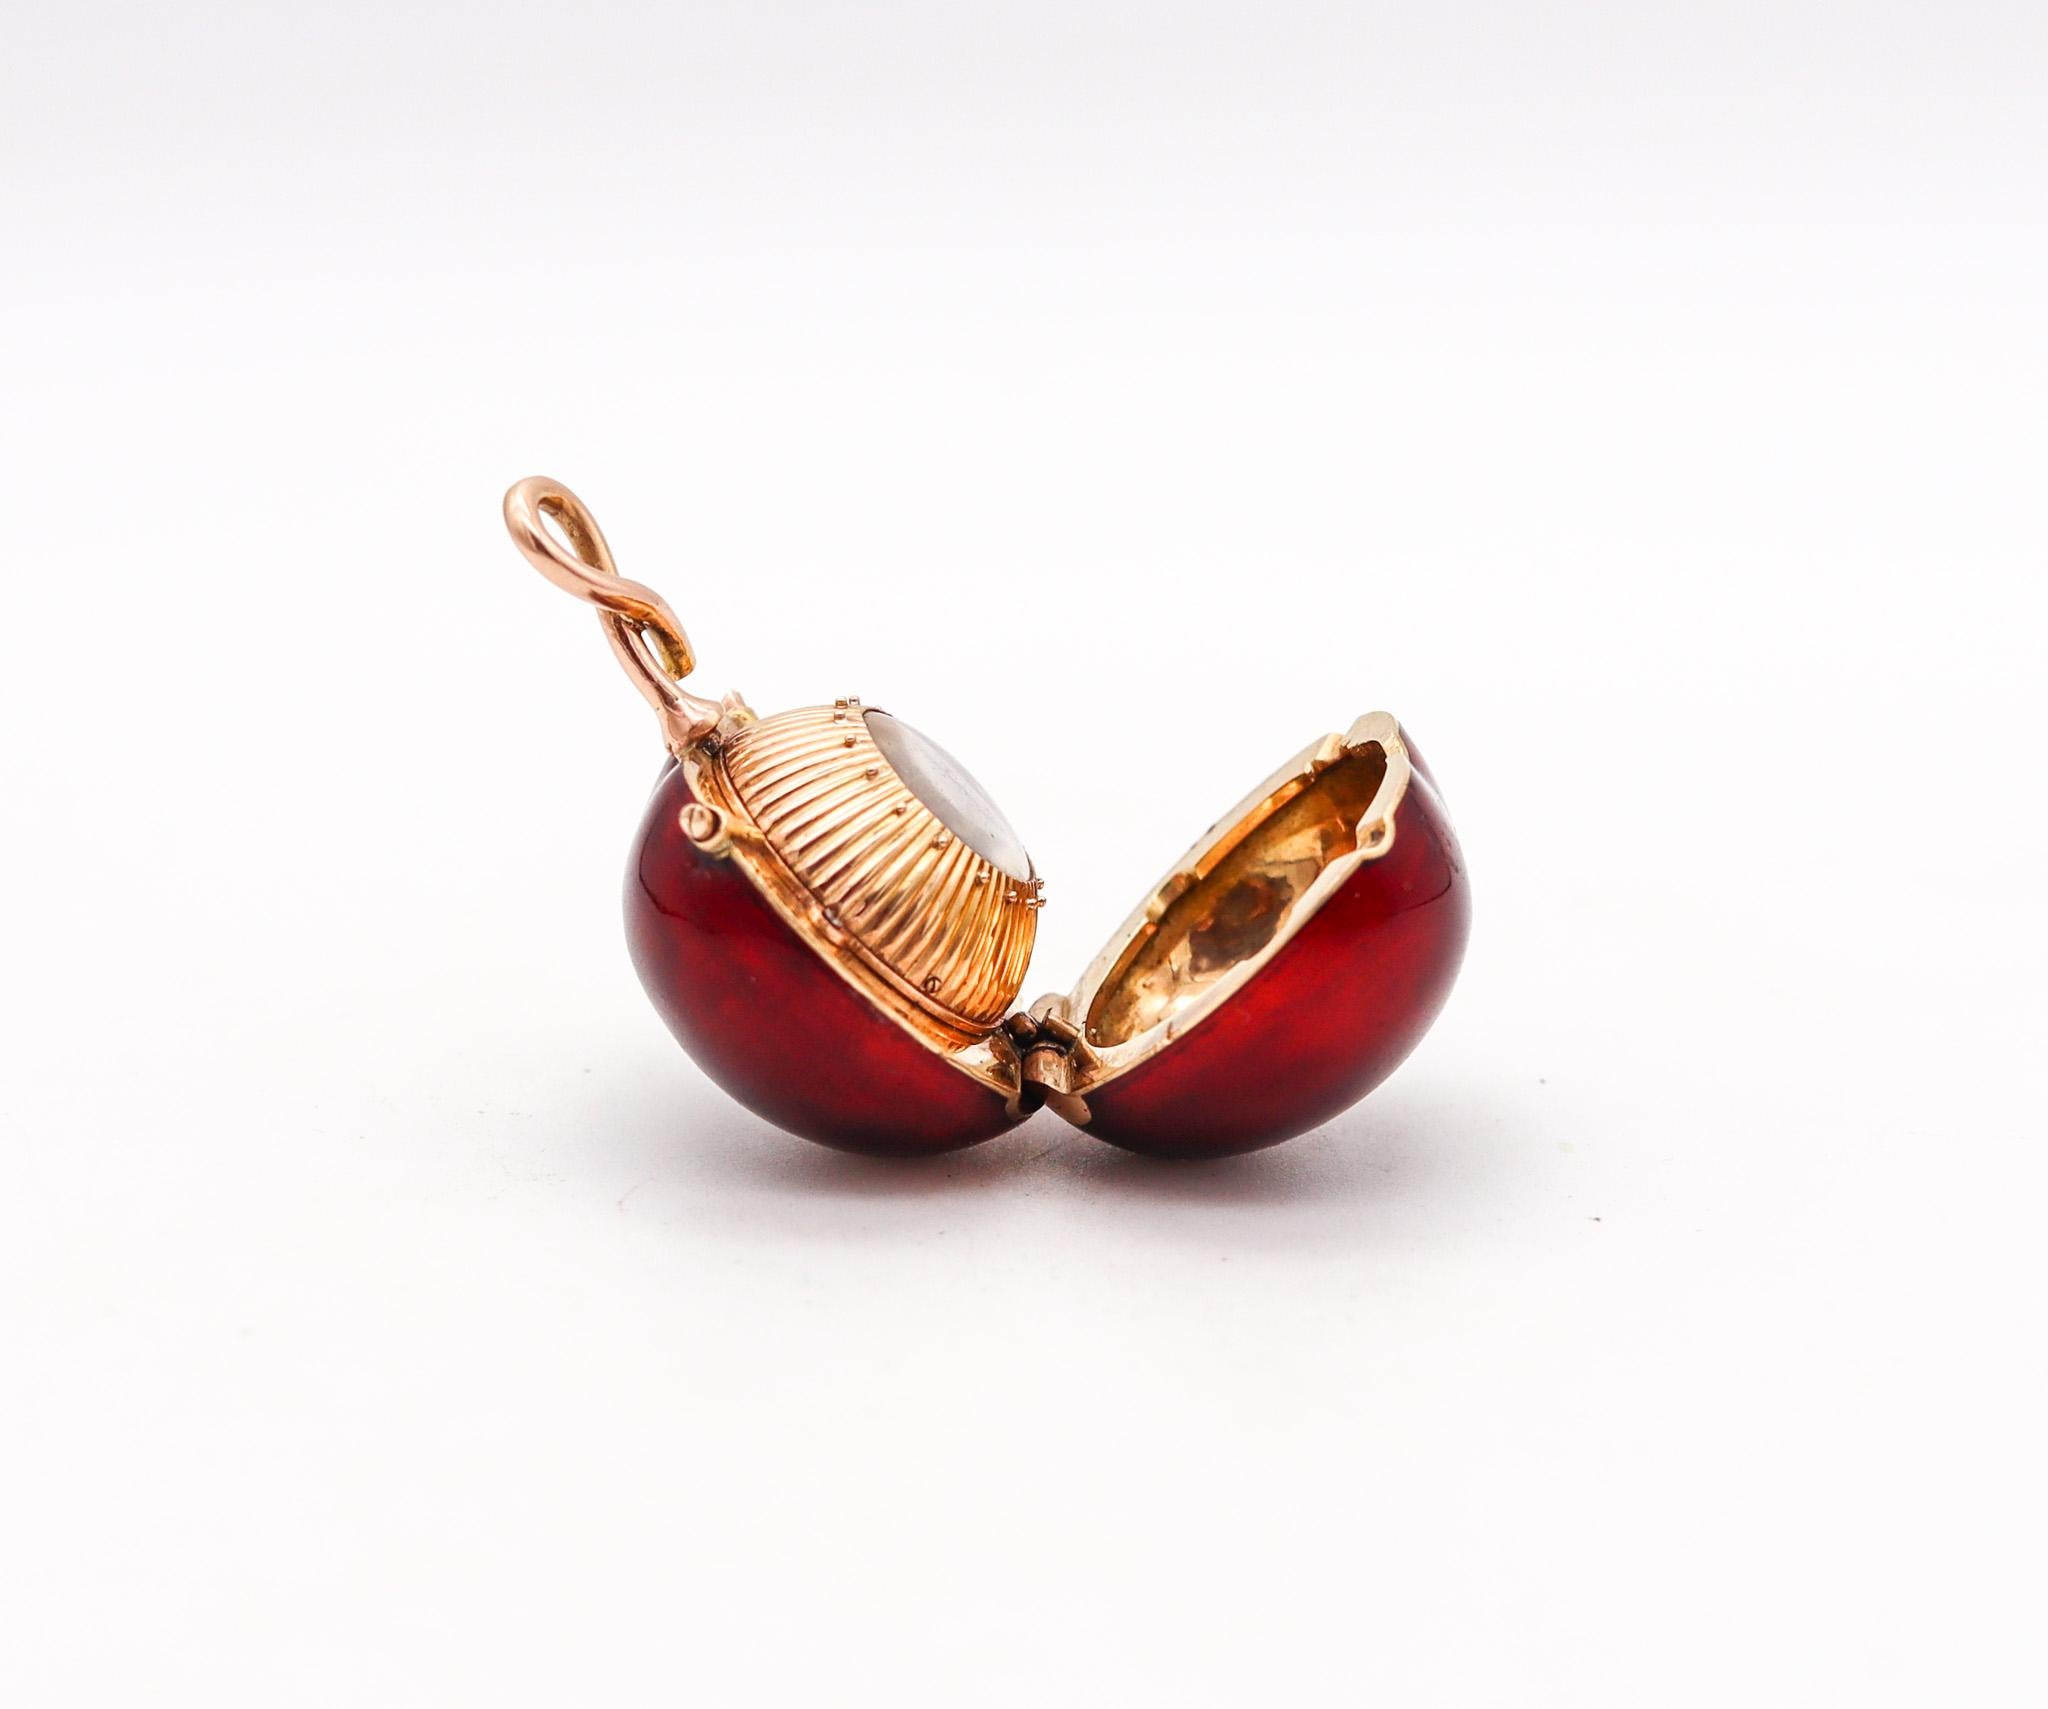 Swiss 1915 Bezel Wind Enamel Cherry Shaped Miniature Pendant Watch In 18Kt Gold For Sale 1